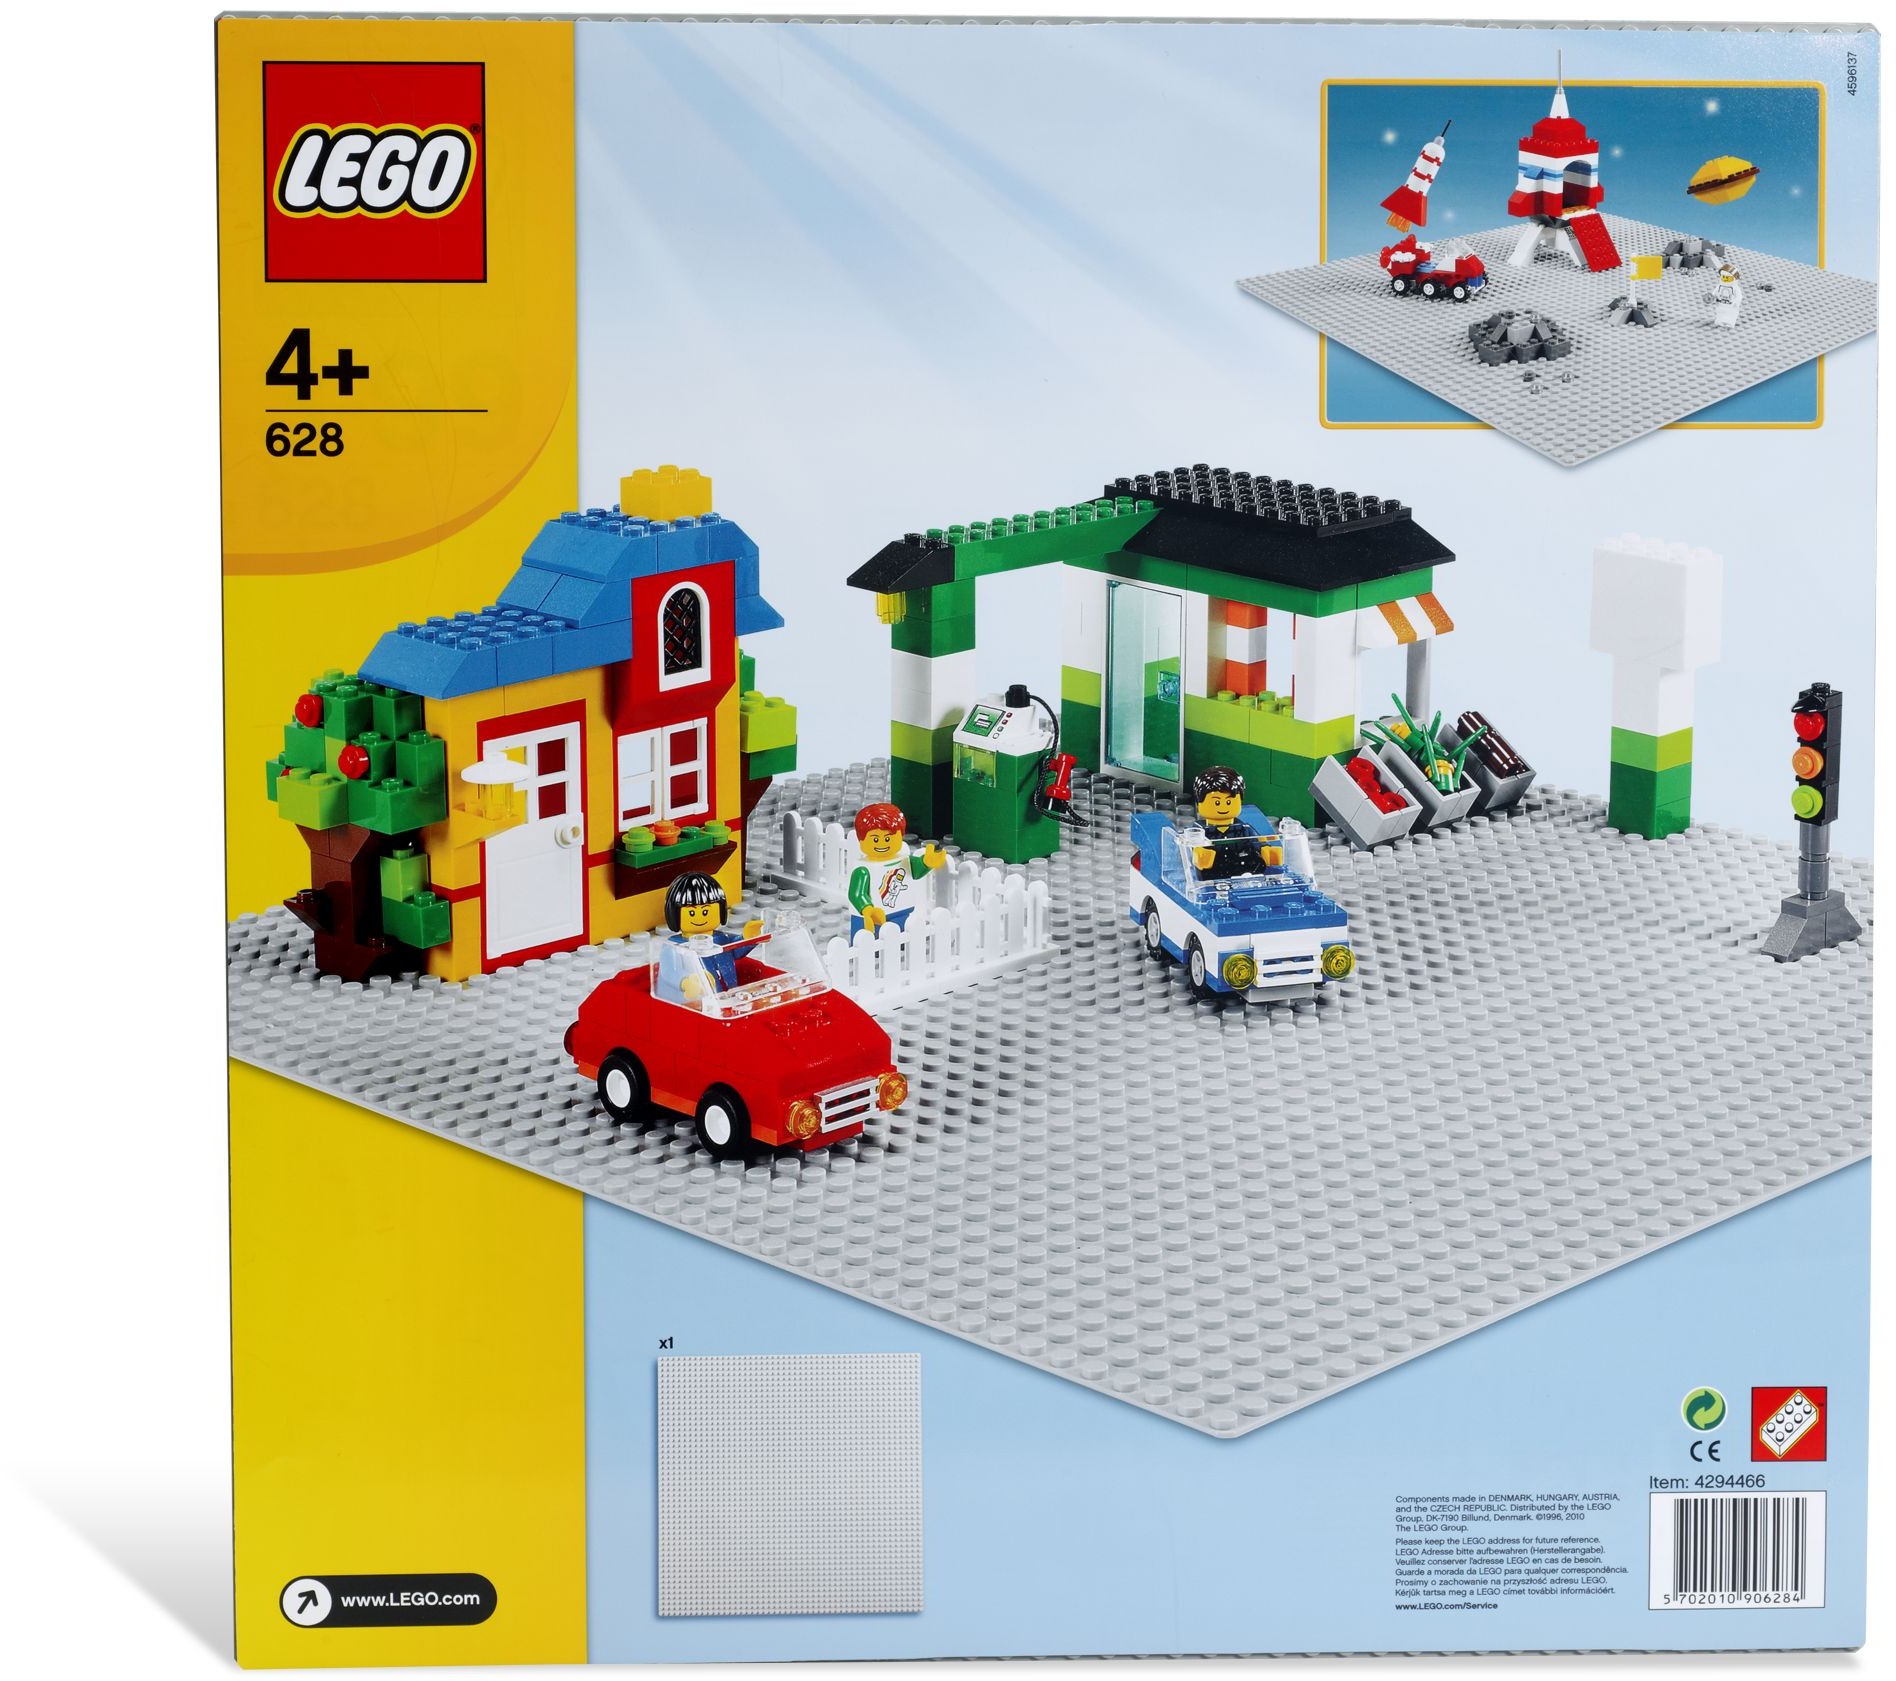 1996 | Brickset: LEGO set and database